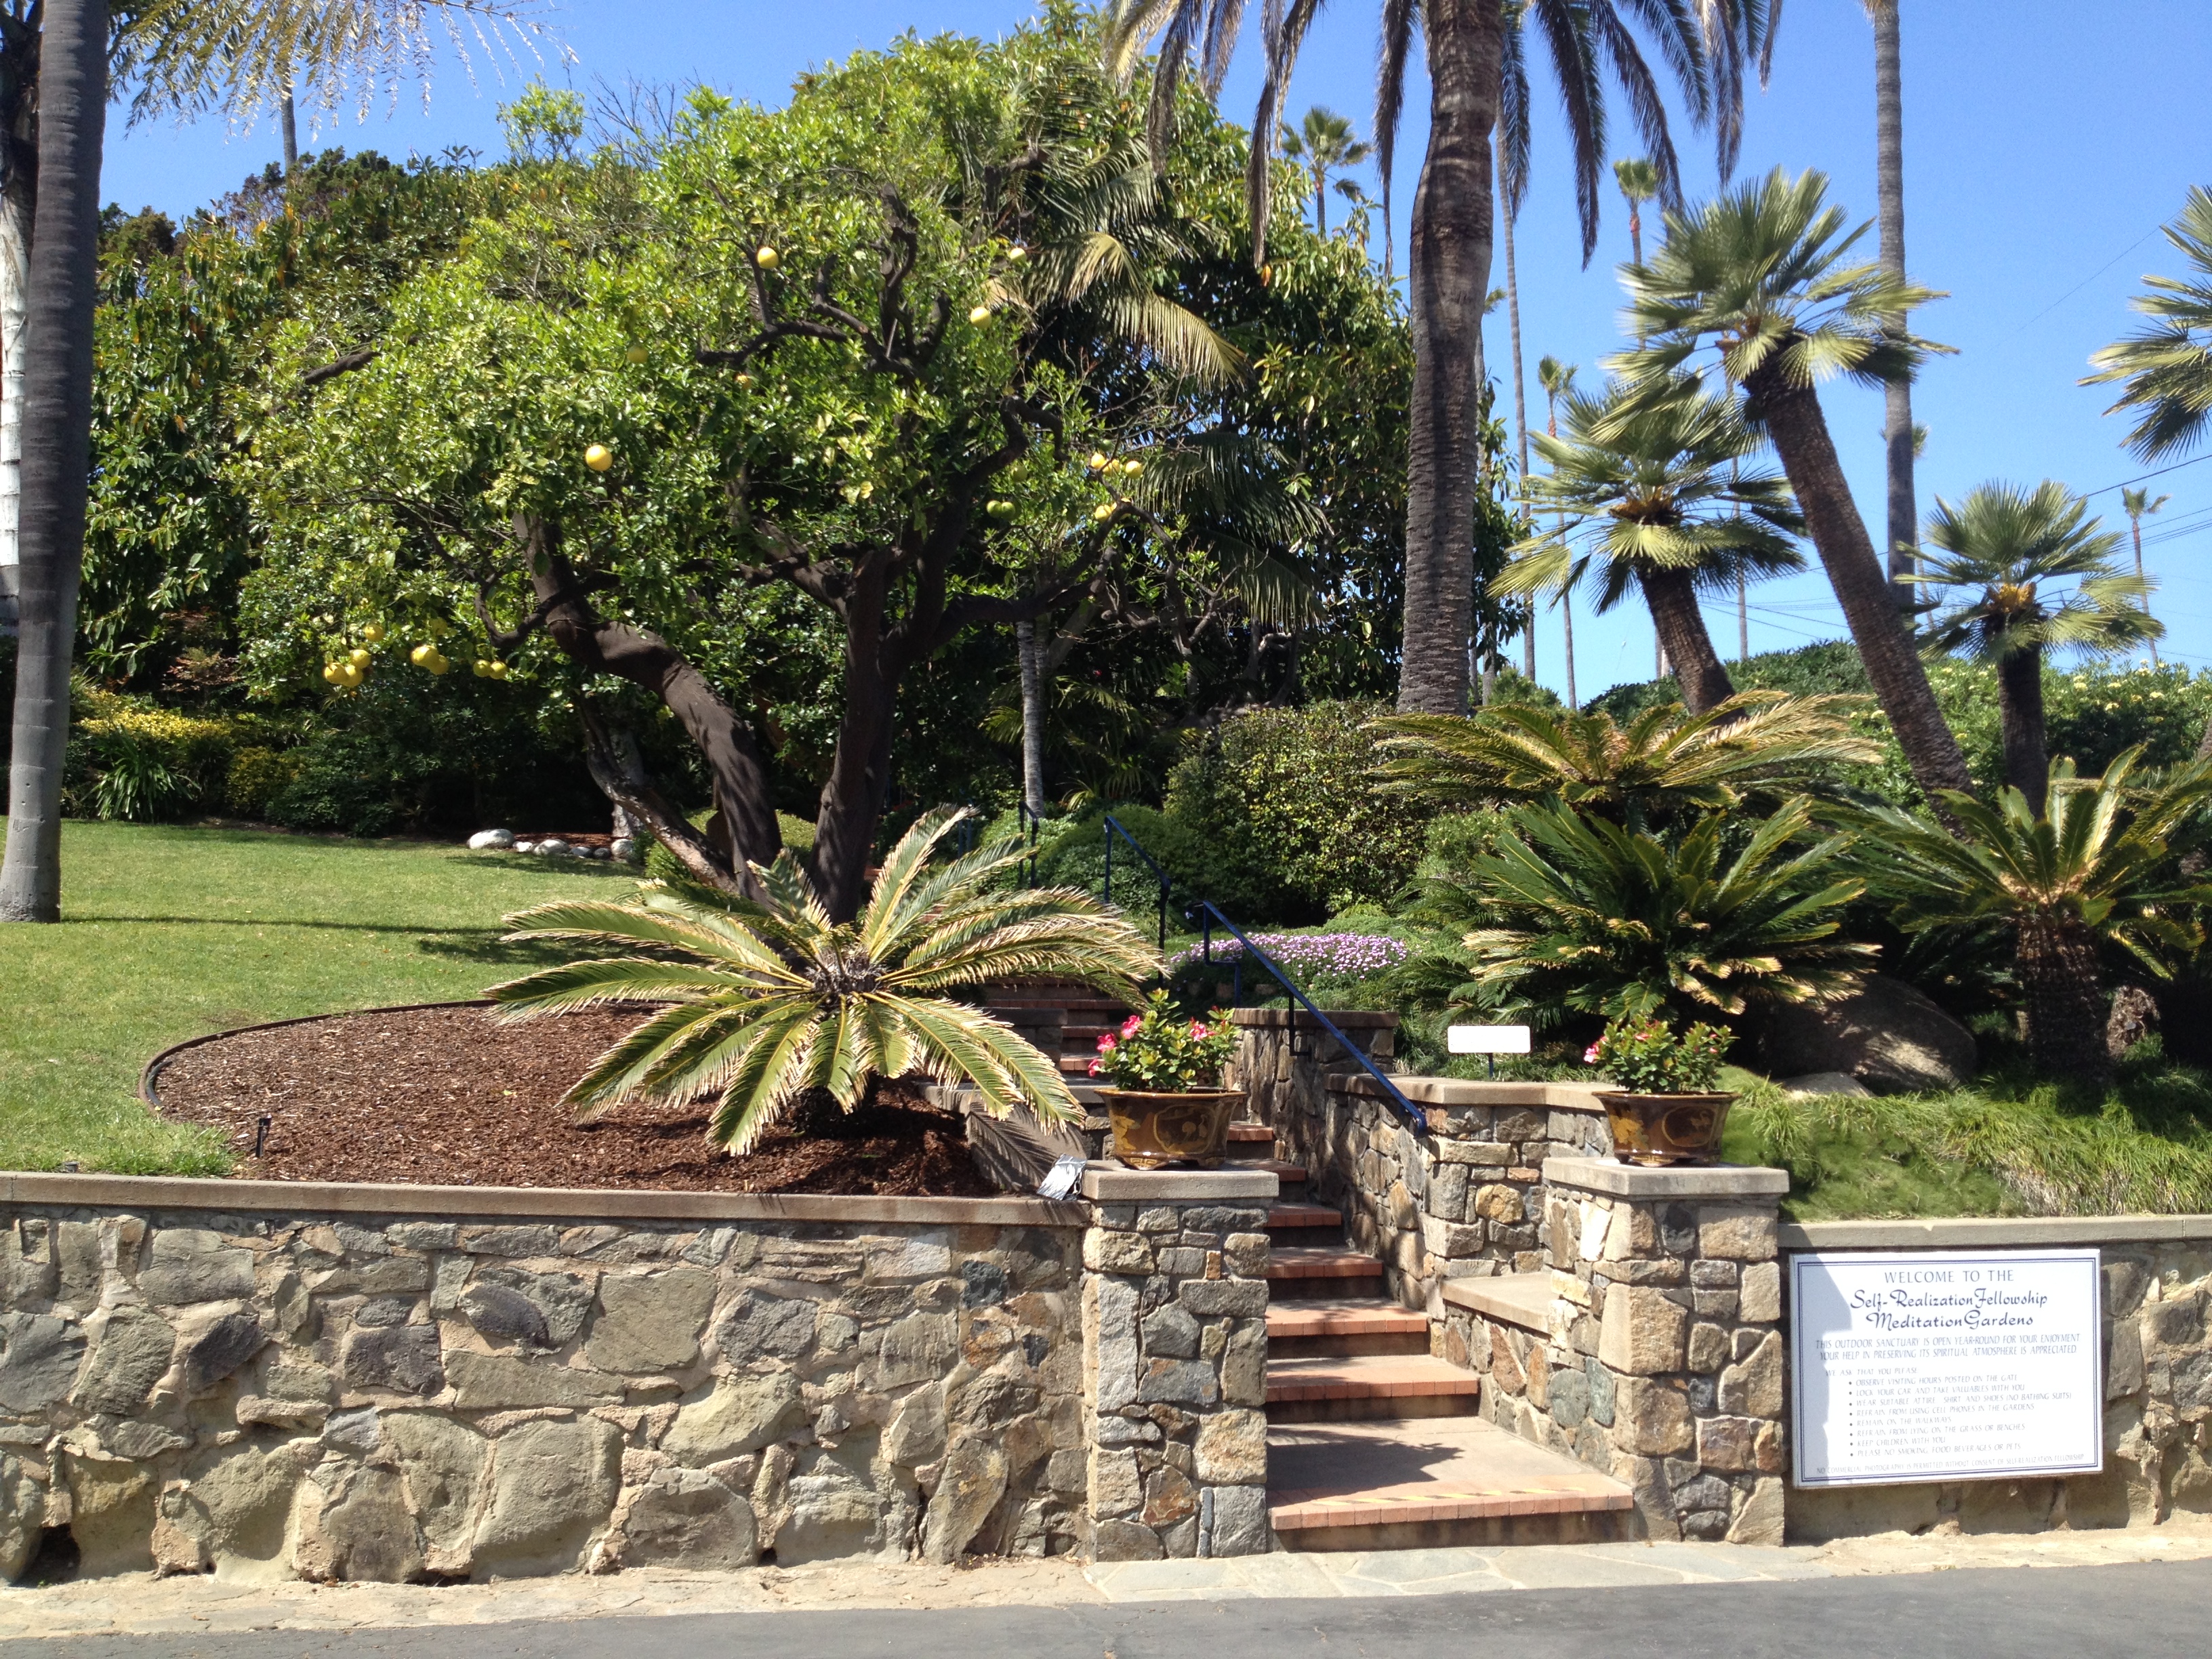 Encinitas Meditation Garden | Experience California Zen with Ocean Views